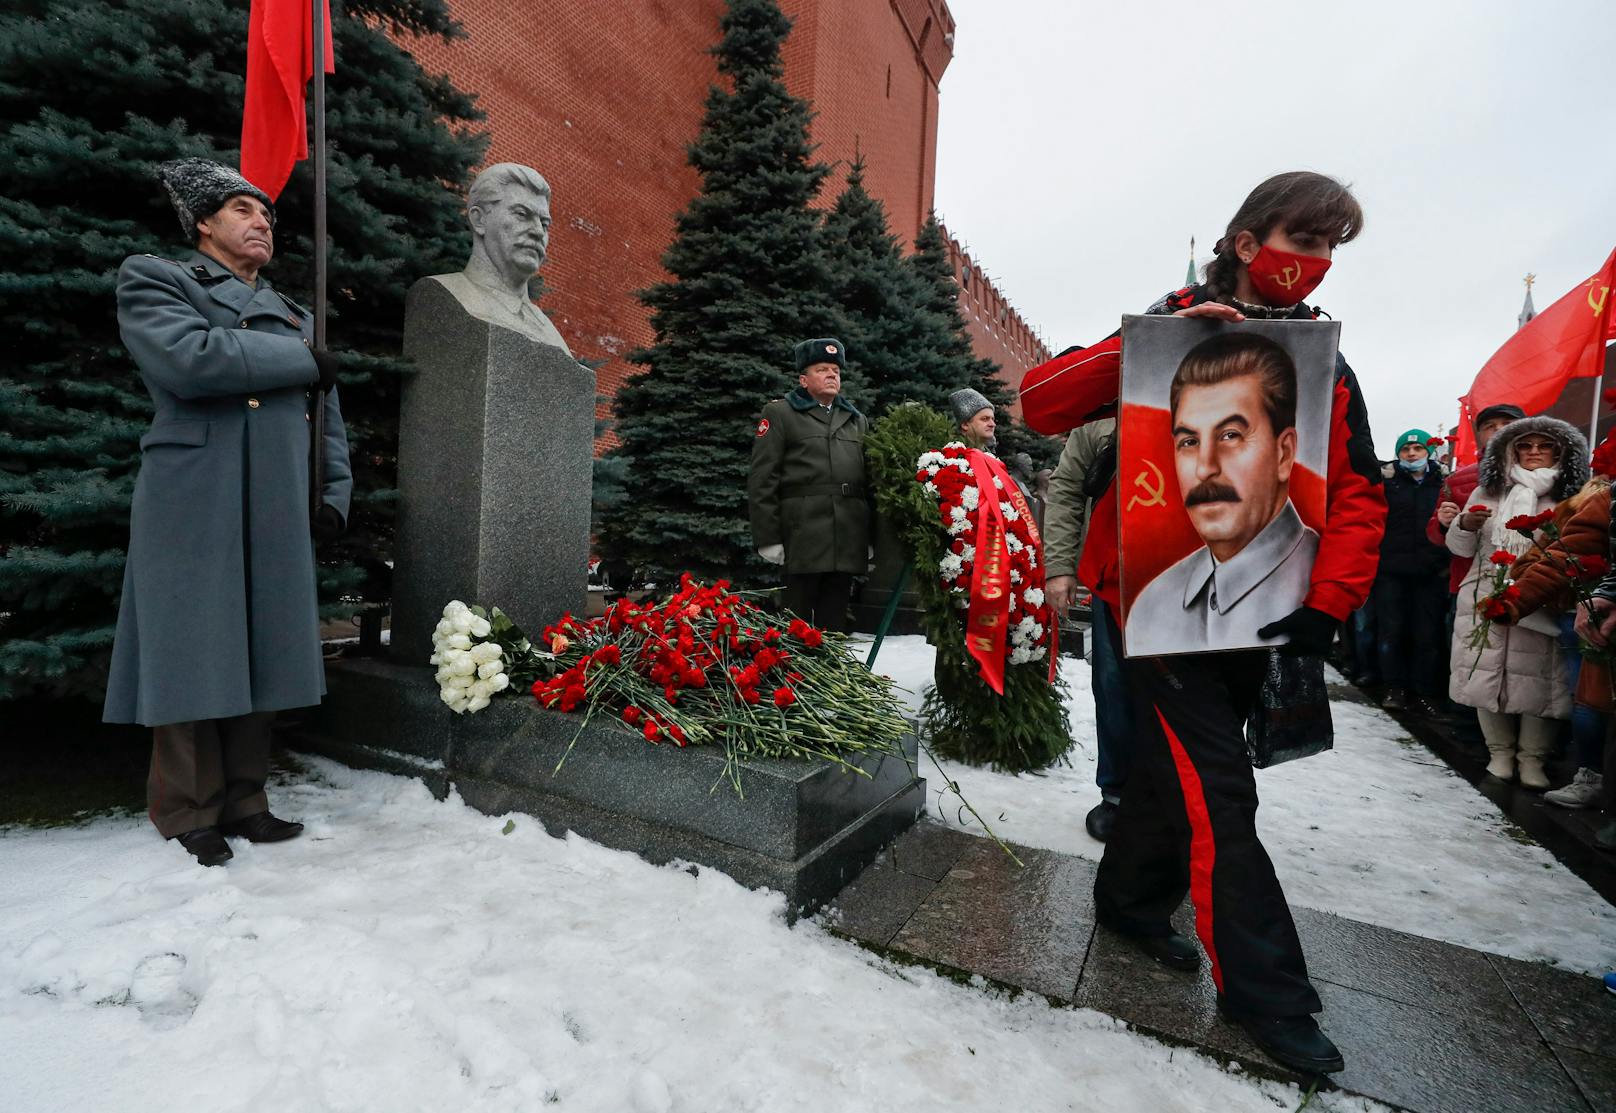 Stalin-Döner muss nach Protesten schließen